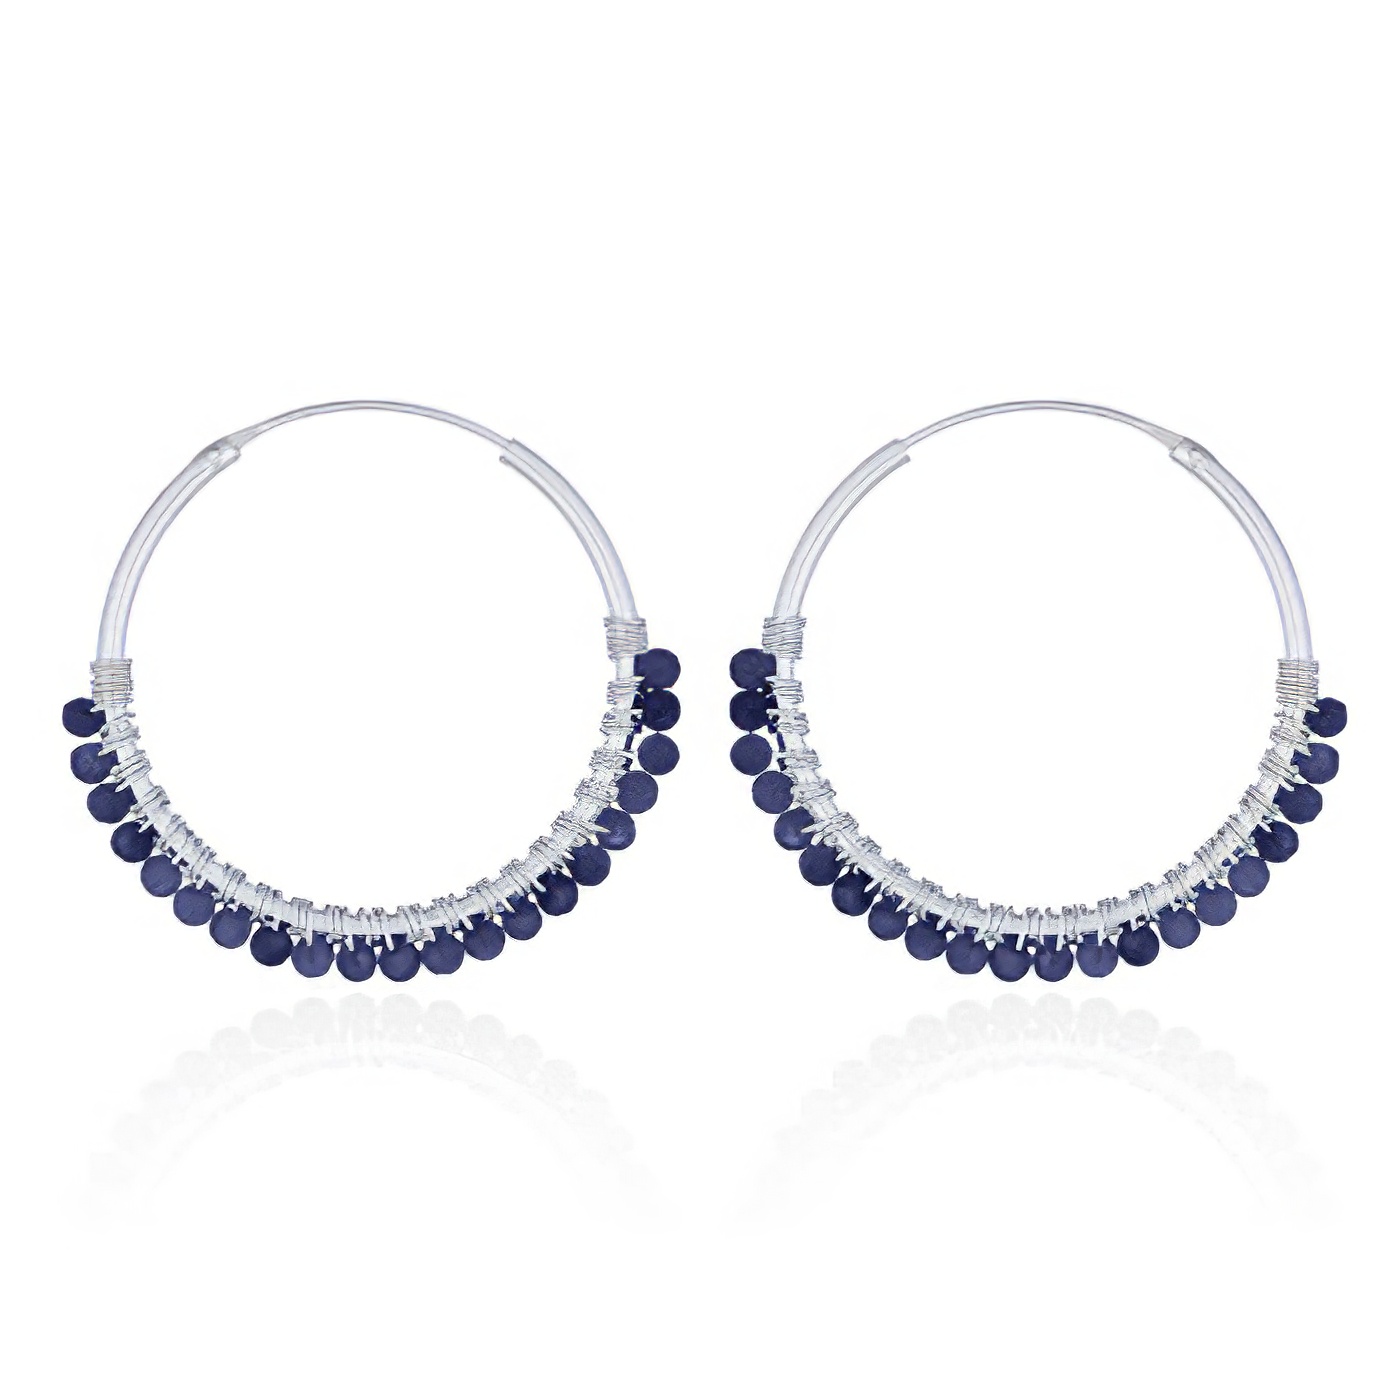 Faceted Lapis Lazuli Sterling Silver Hoop Earrings by BeYindi 